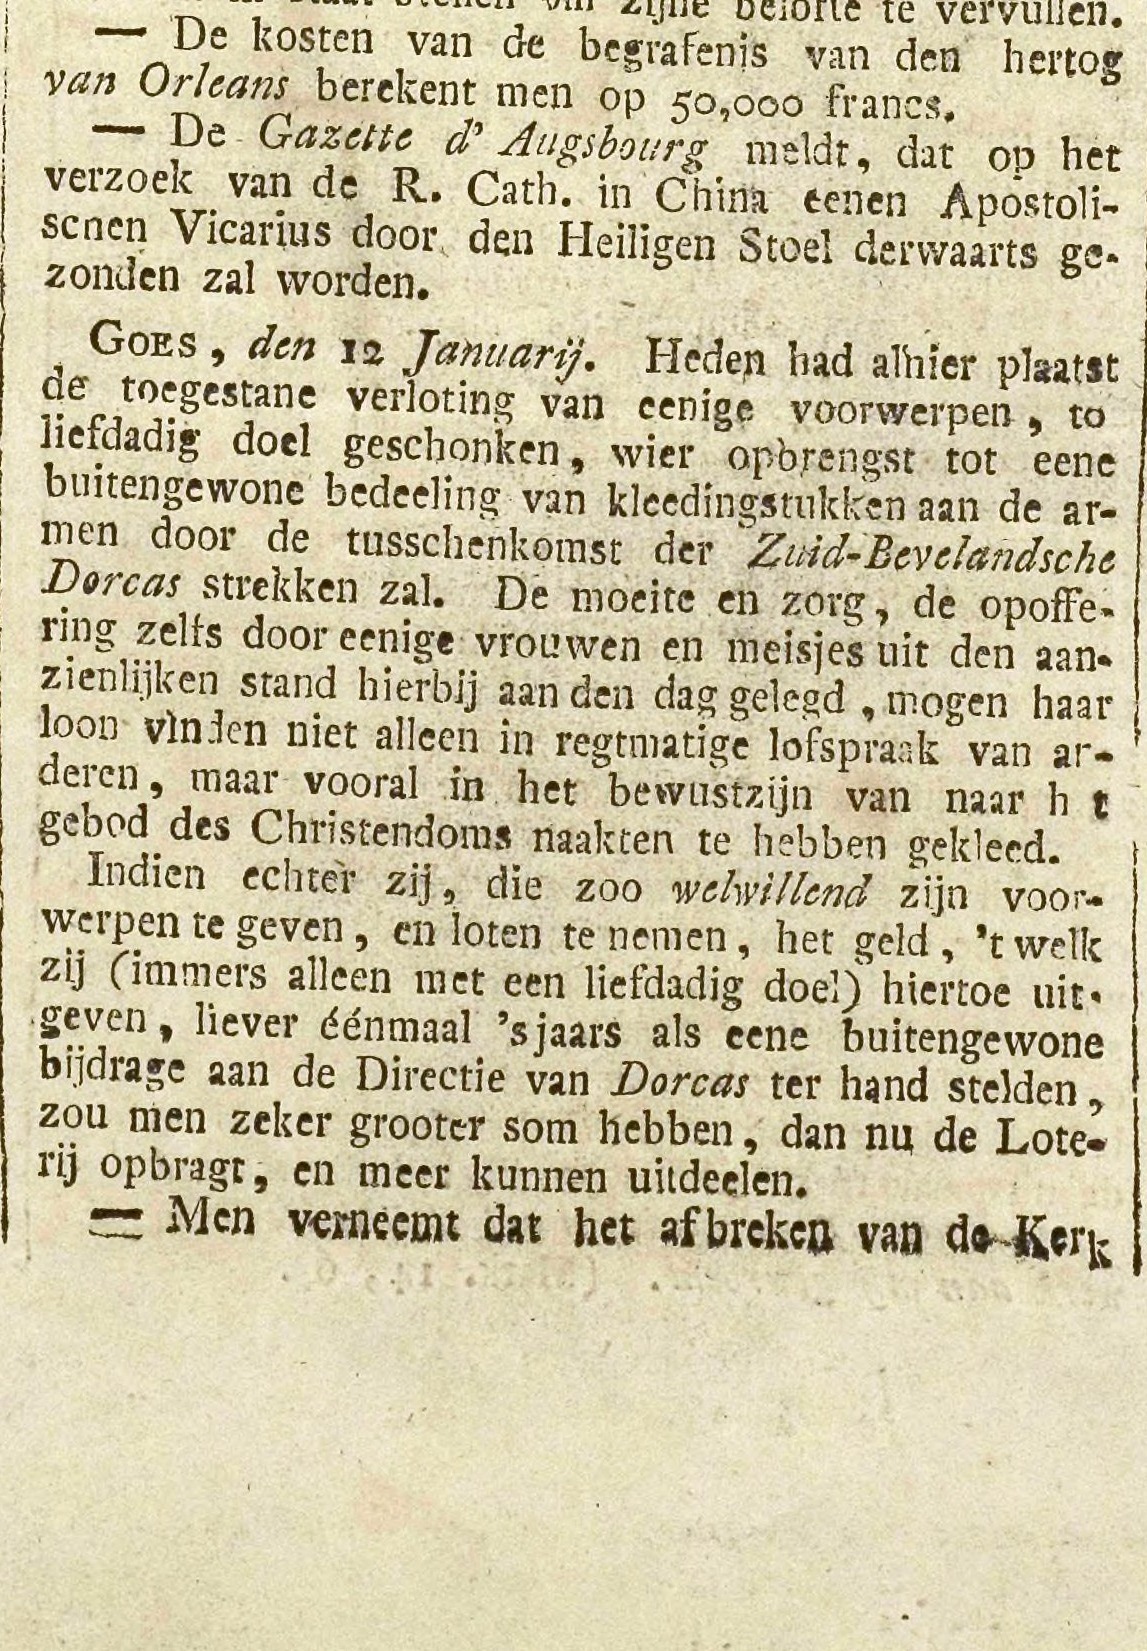 Krantenartikel over een verloting ten behoeve van de armen, Goessche Courant, 16 januari 1843.